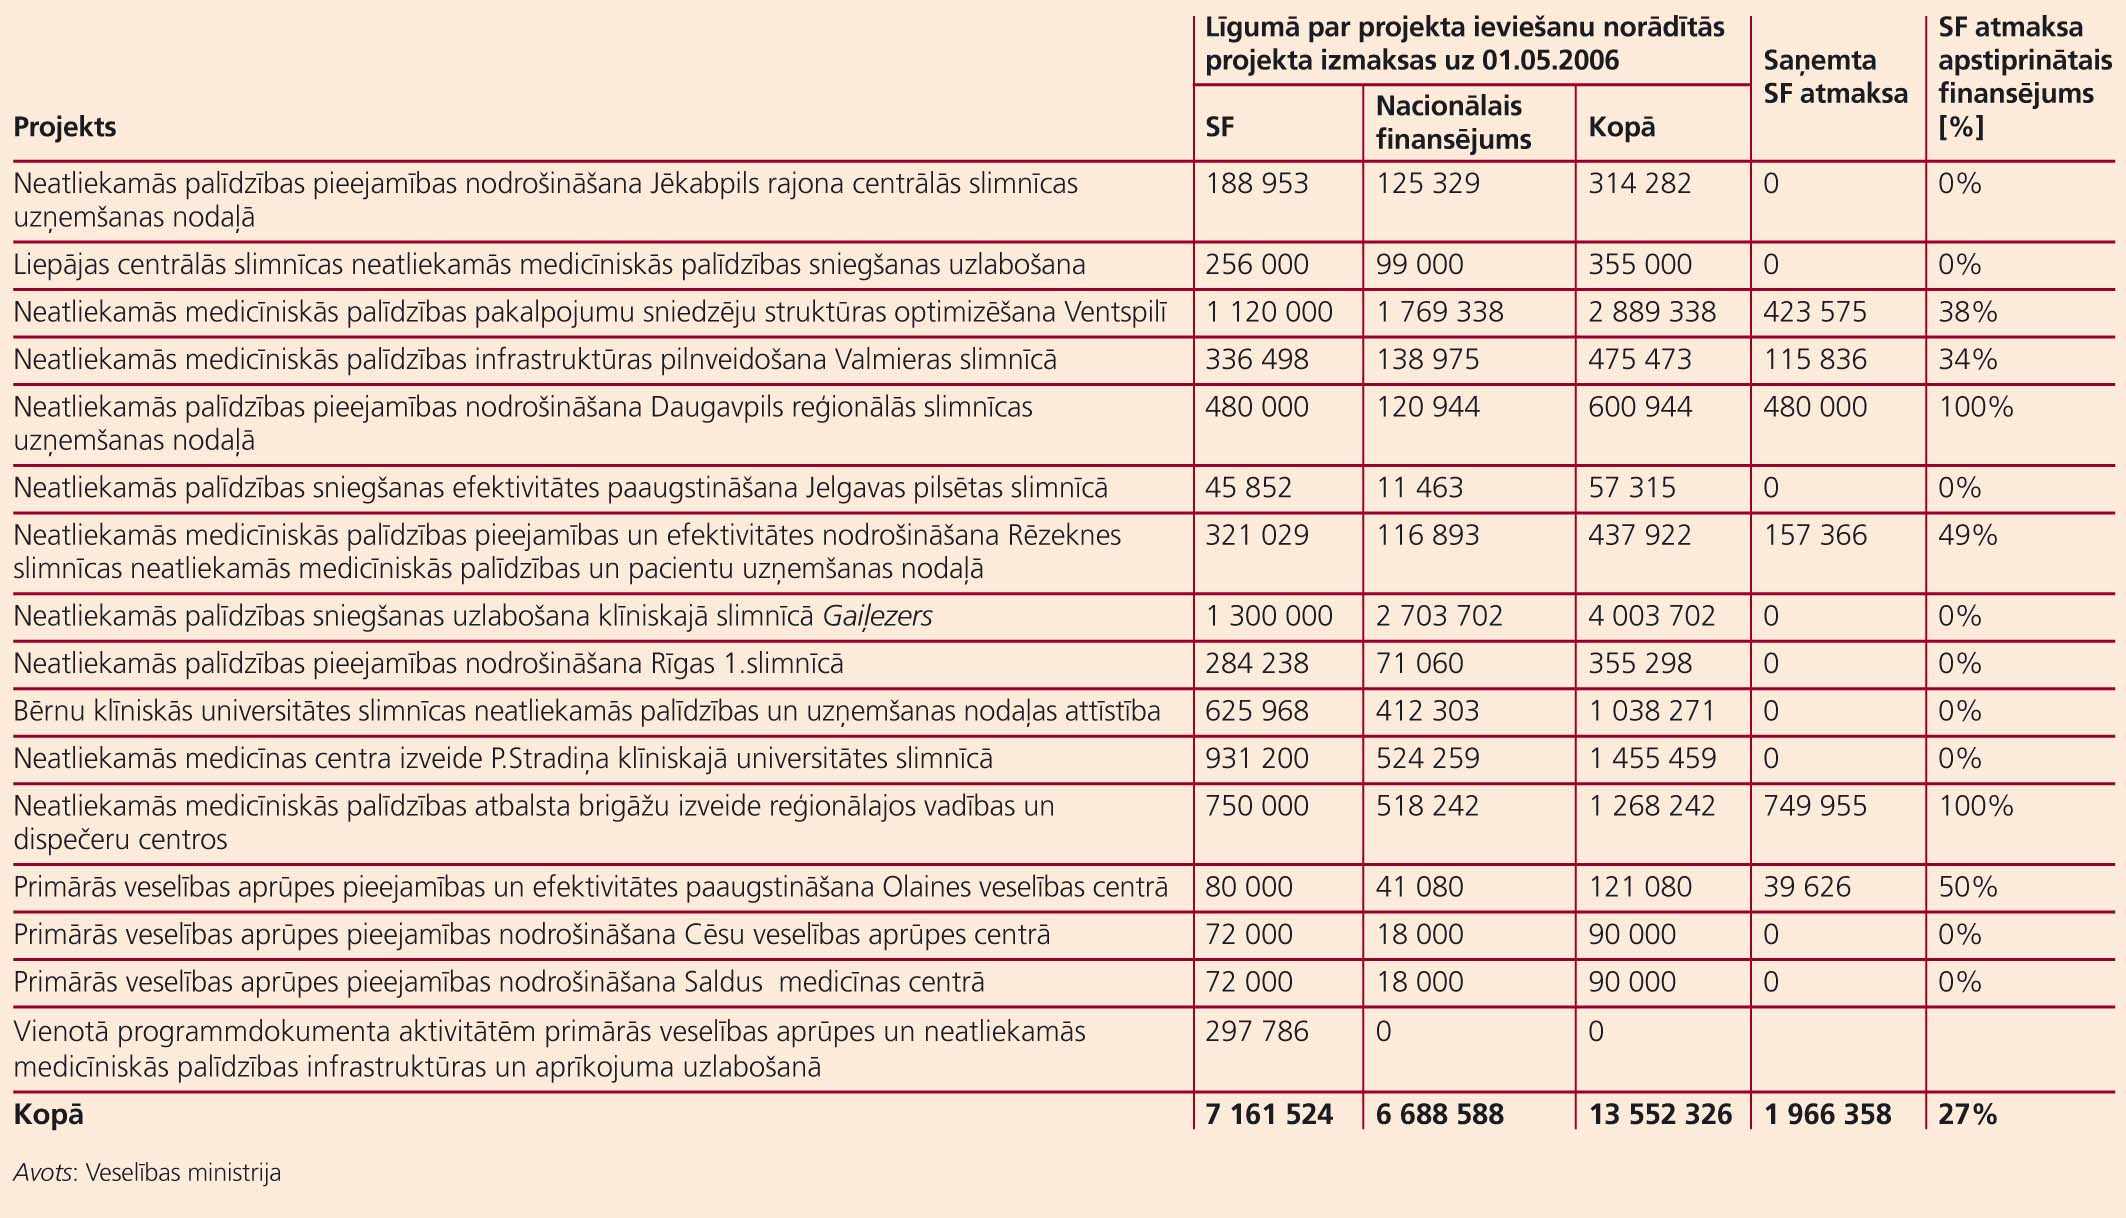 Eiropas Savienības struktūrfondu finansējuma izlietojums veselības aprūpei Latvijā